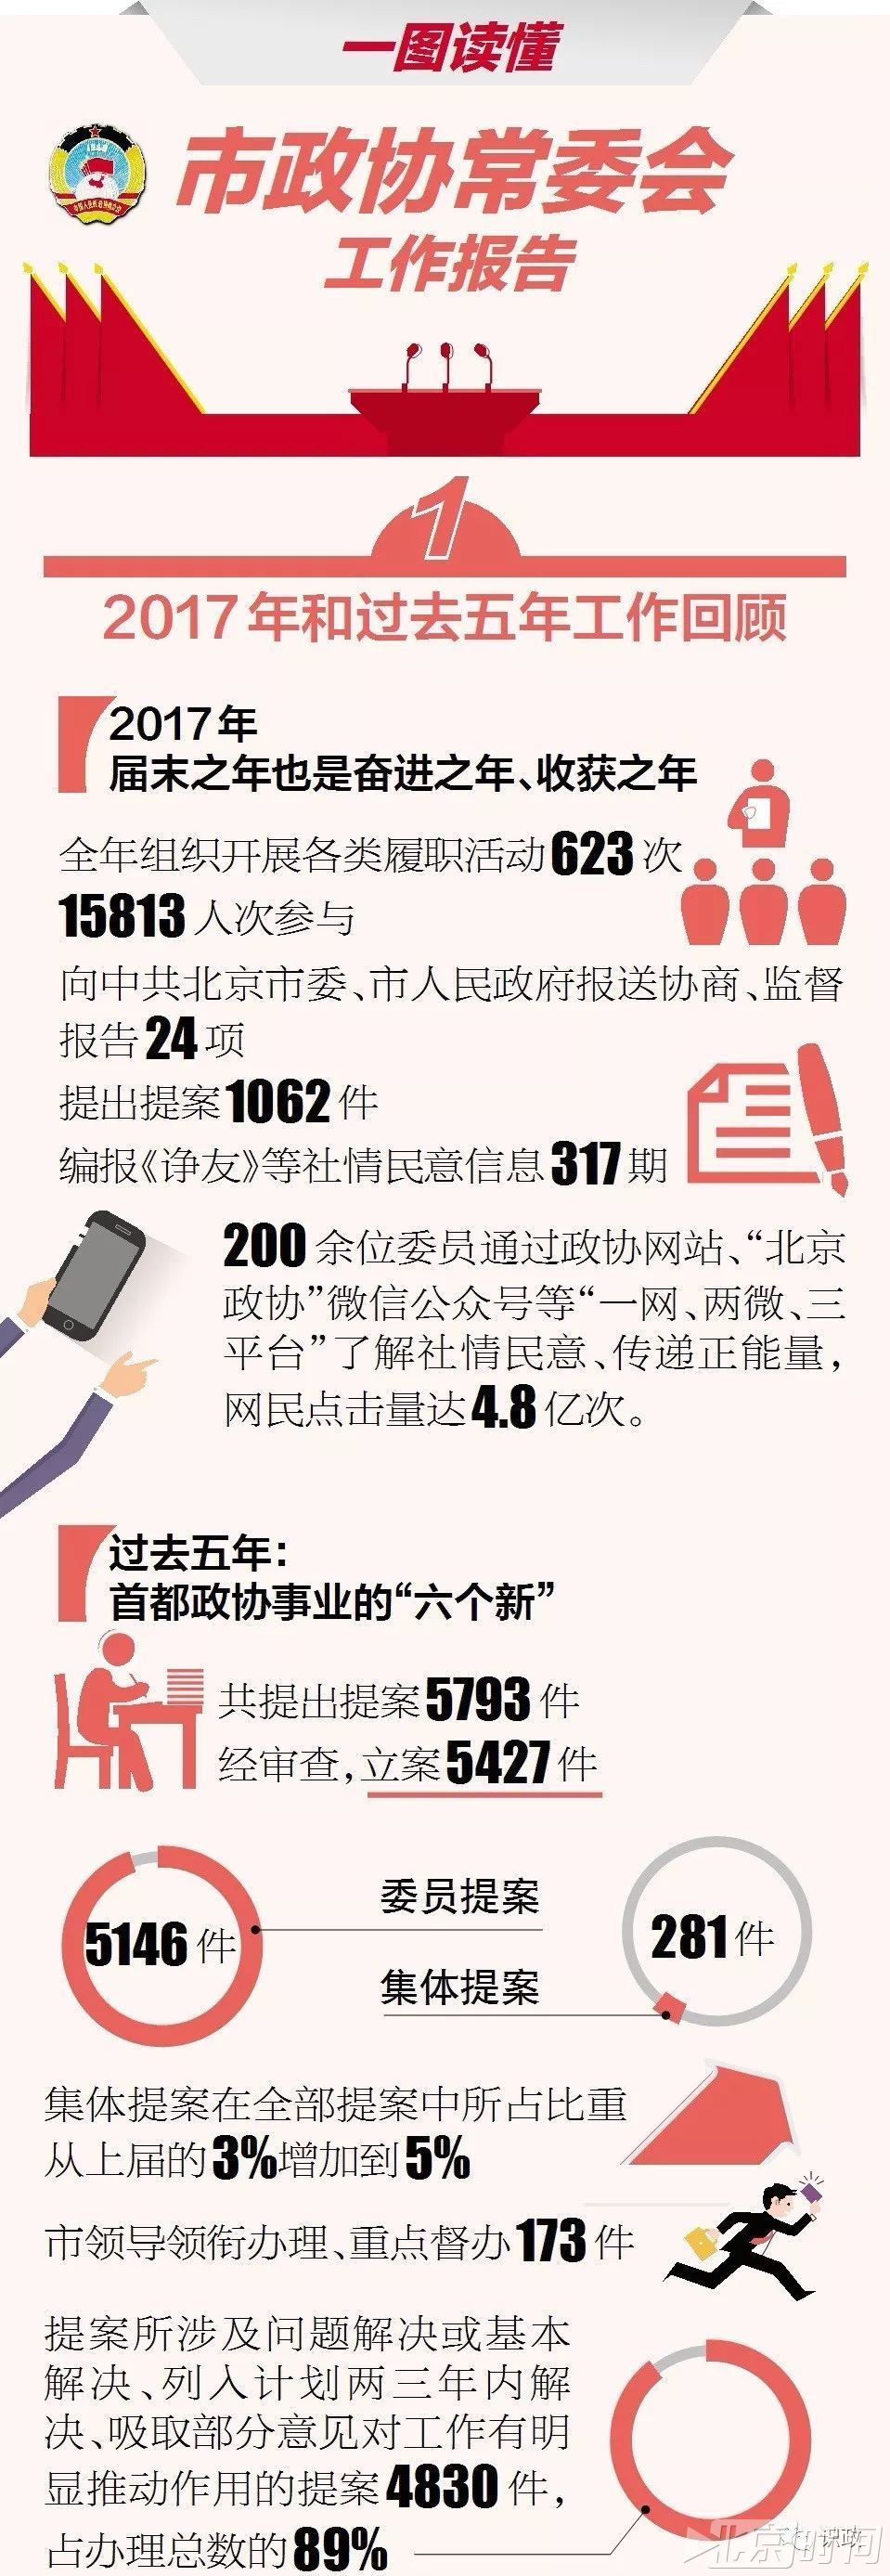 【权威】一图读懂北京市政协常委会工作报告